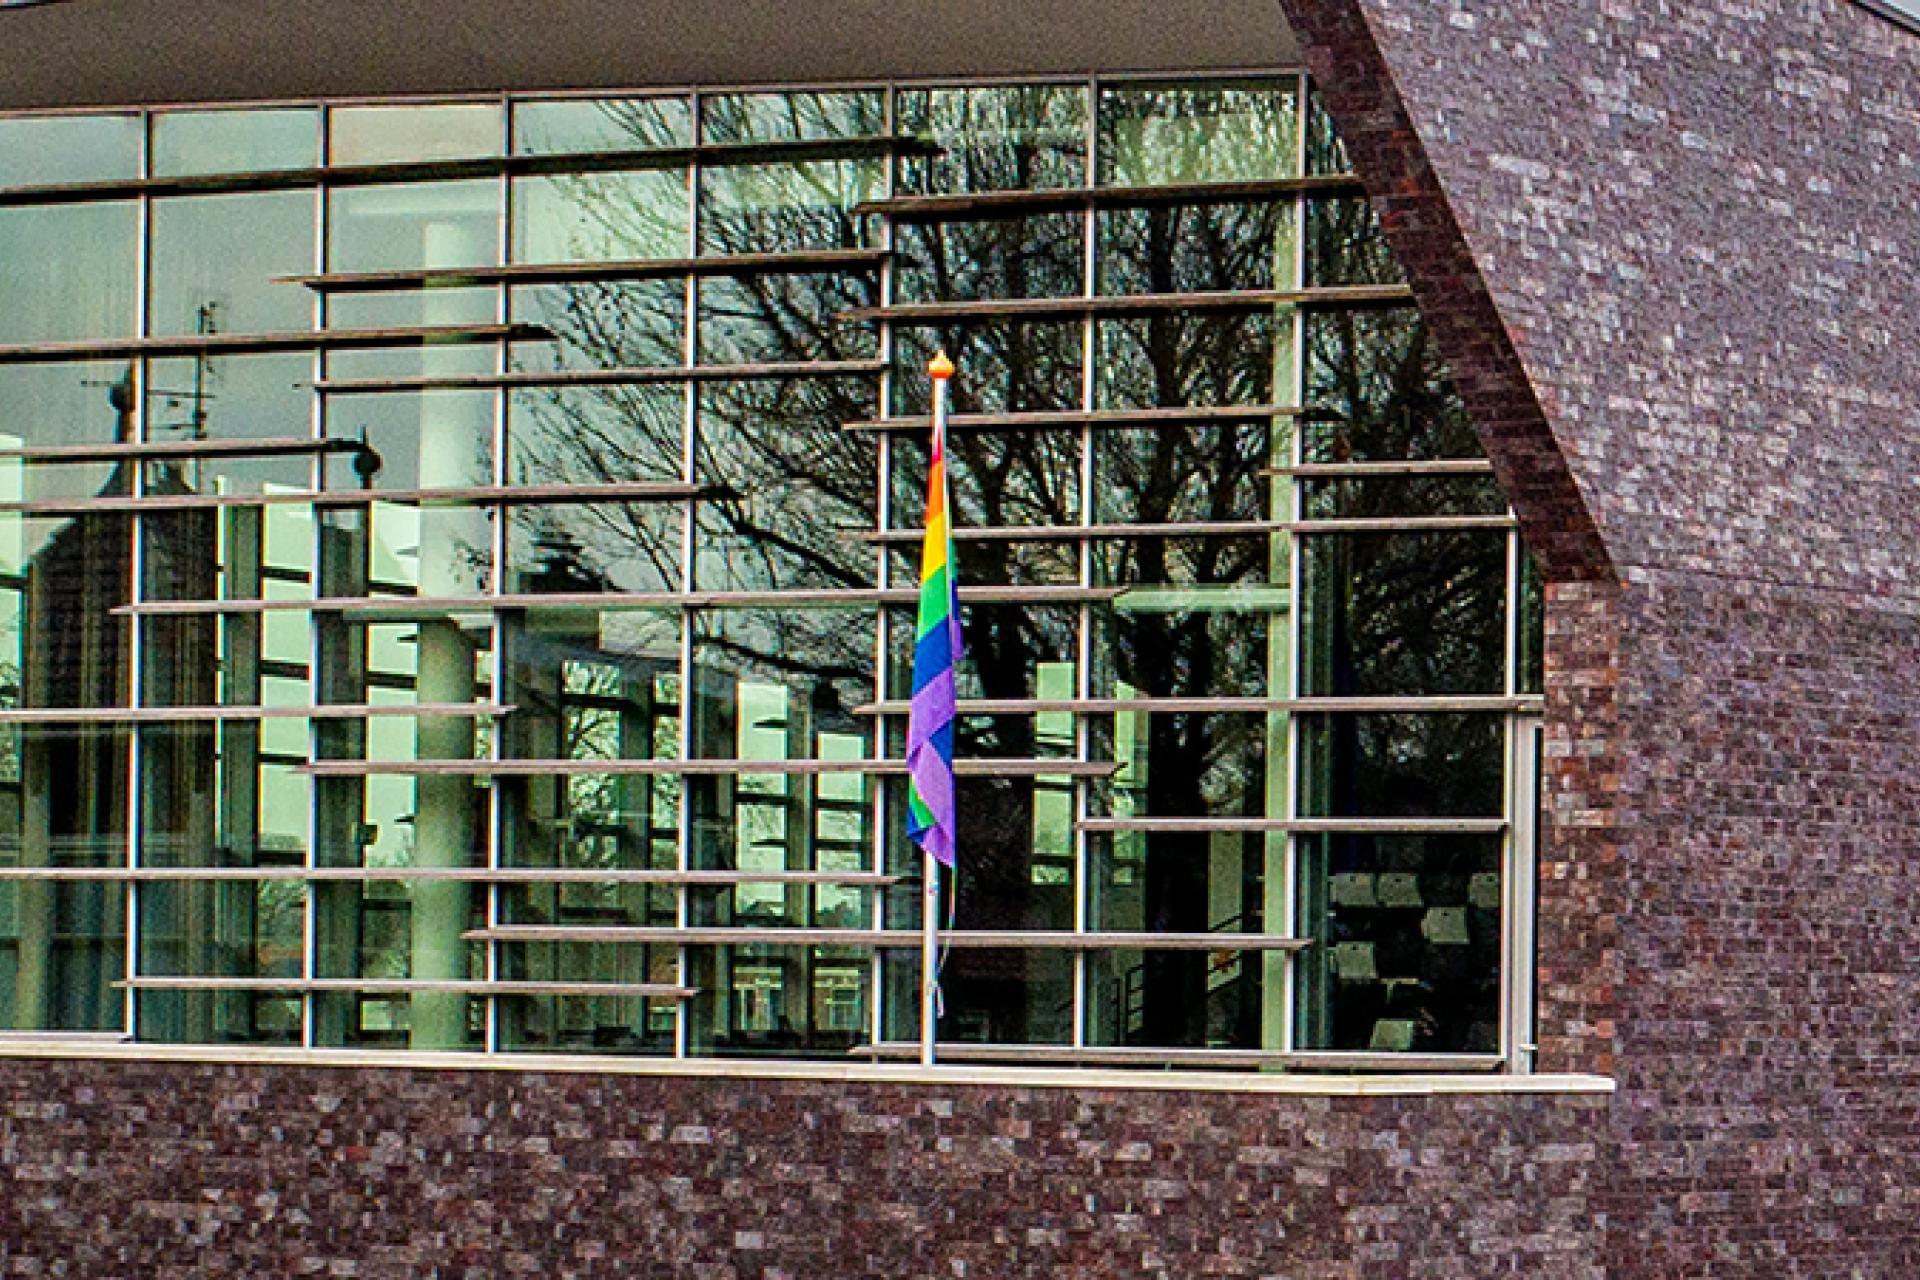 Zijaanzicht glazen pui van het gemeentehuis met aan de rechterkant rij vlaggen en een kale boom 